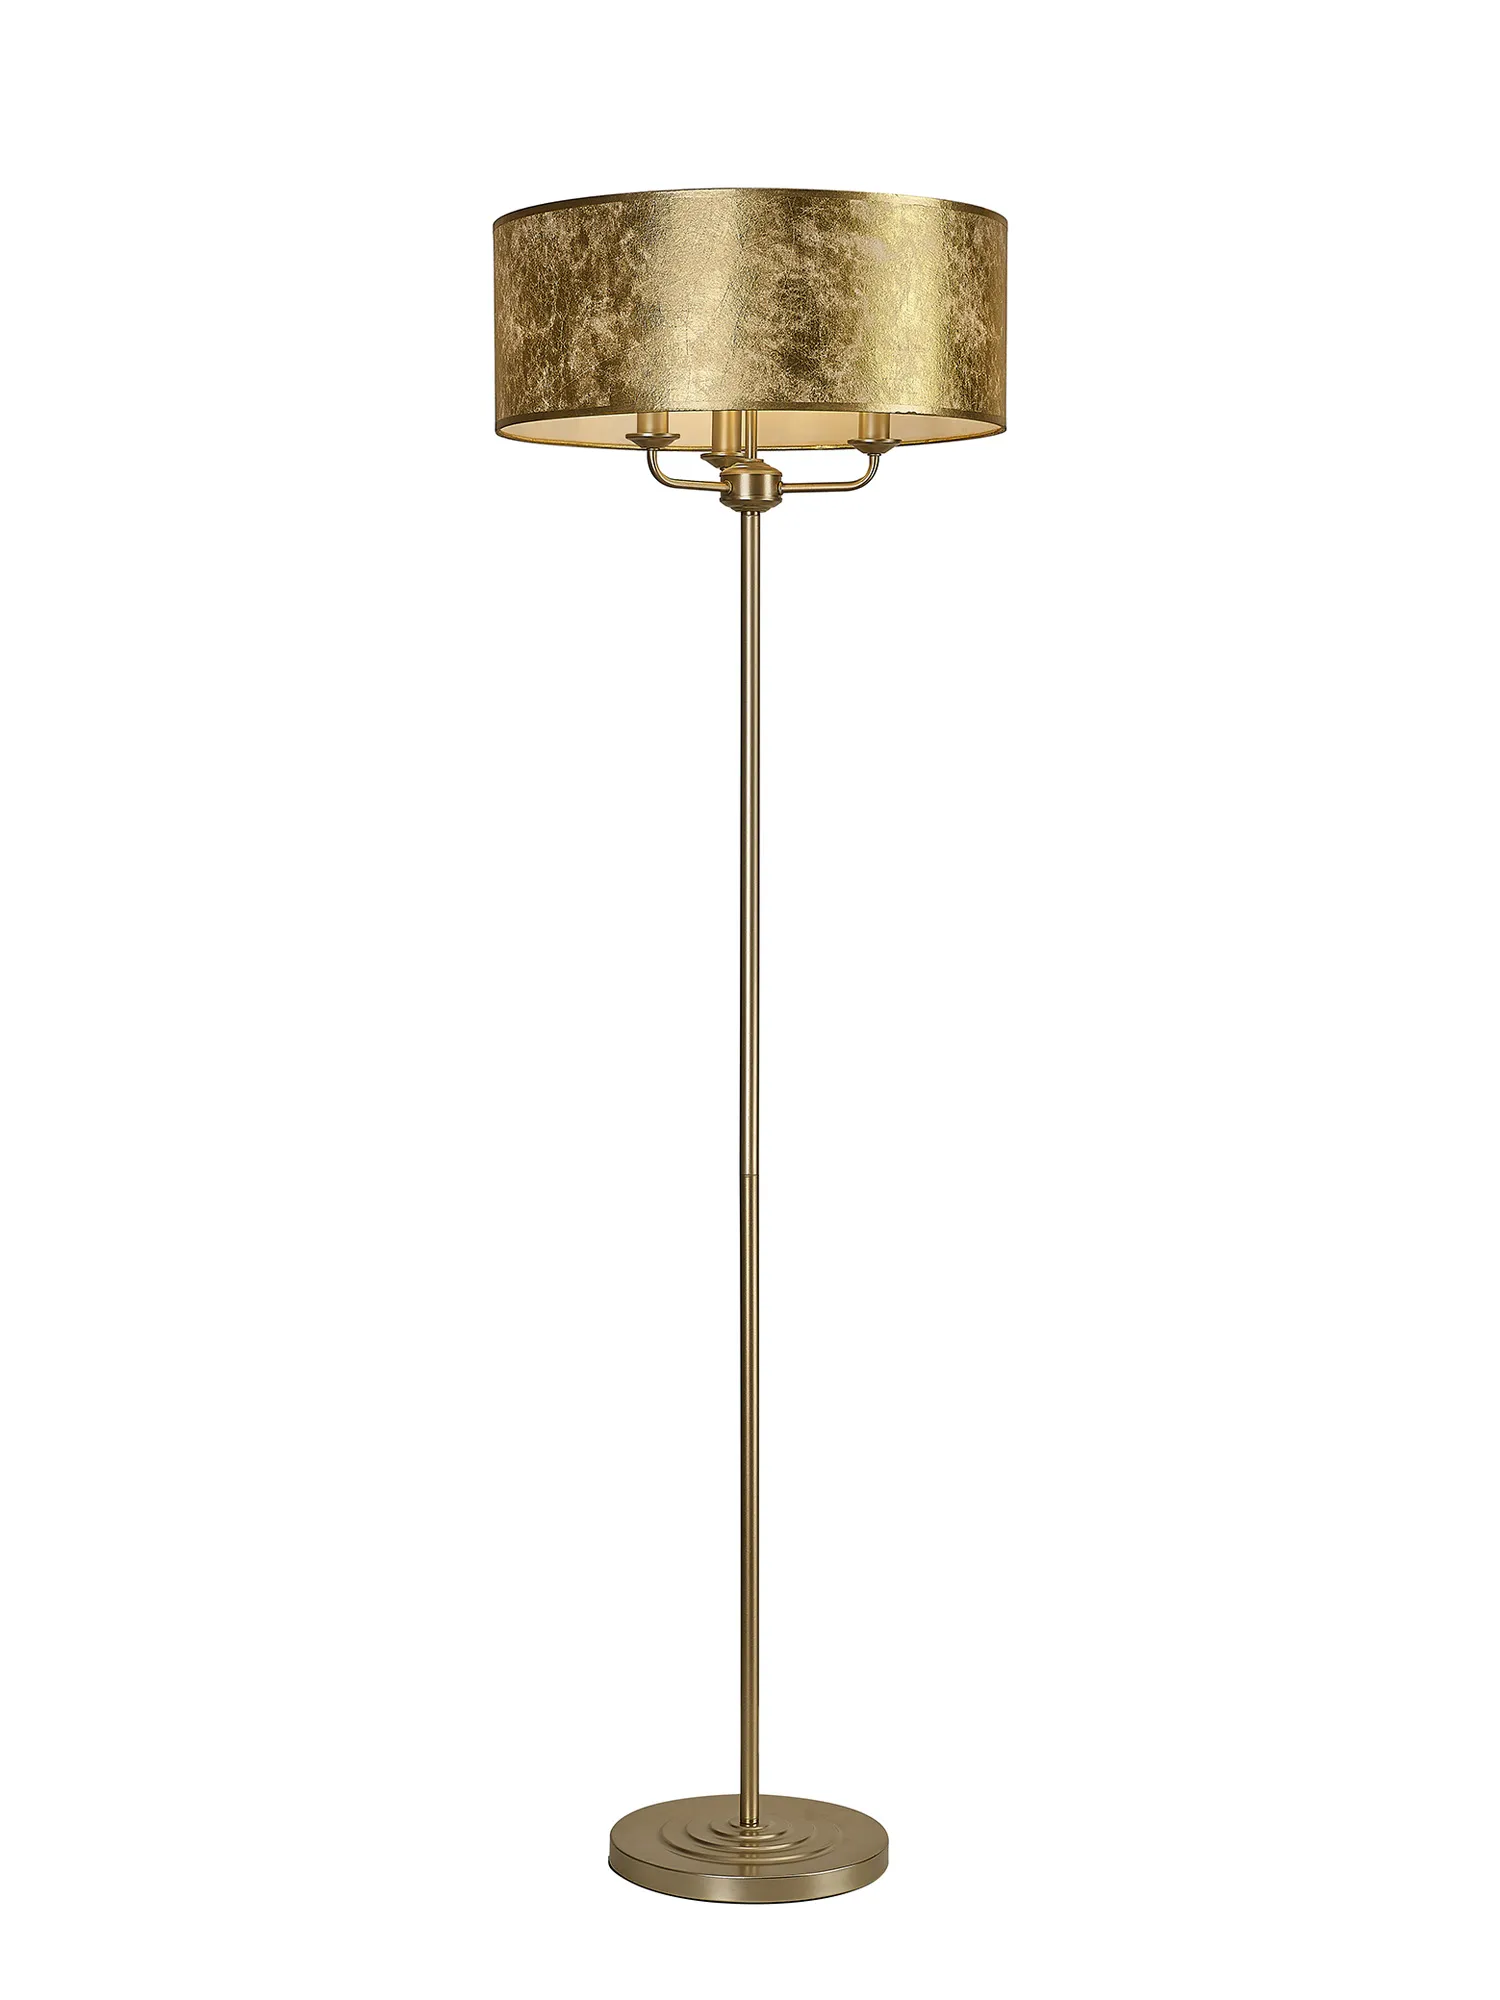 DK1005  Banyan 45cm 3 Light Floor Lamp Champagne Gold; Gold Leaf